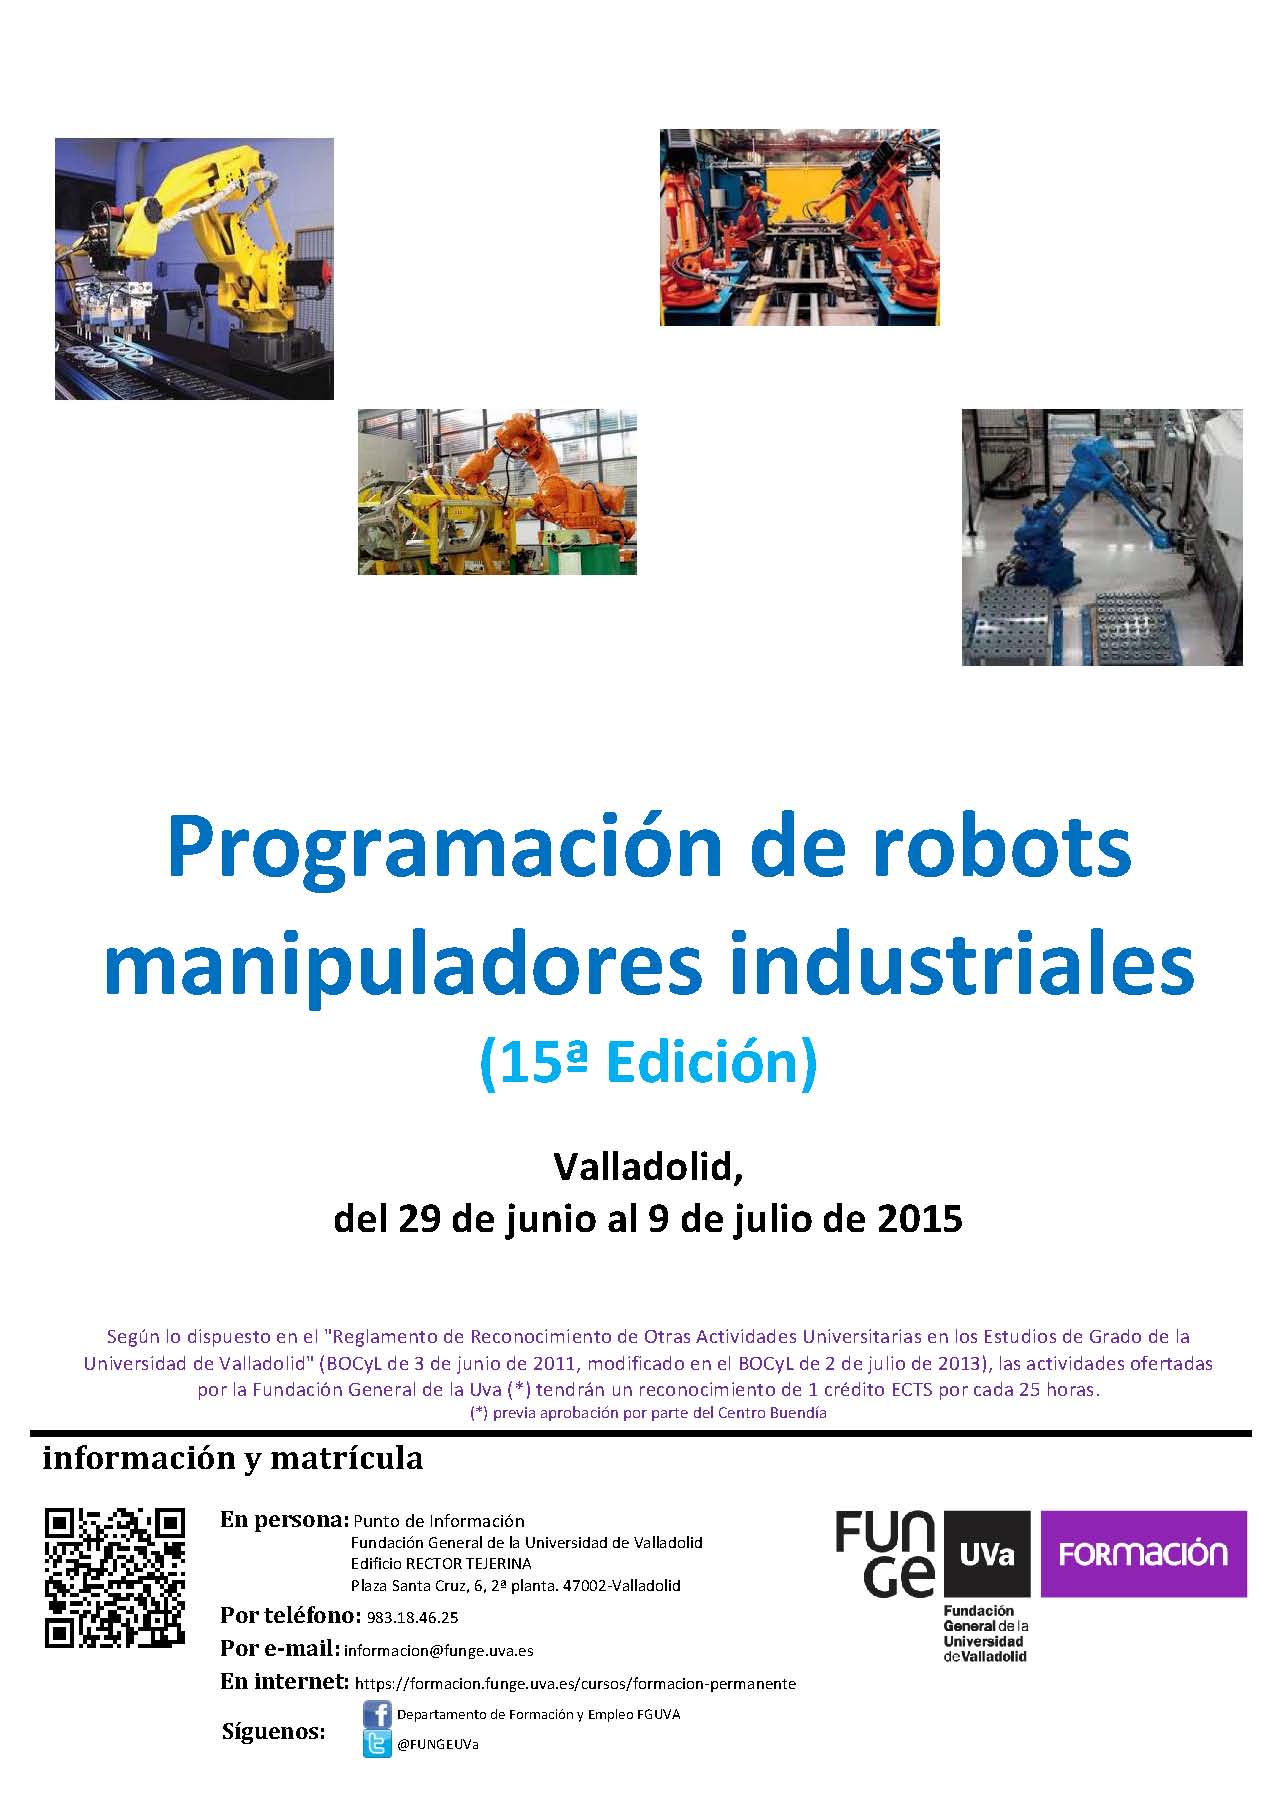 `Curso Programación de robots manipuladores industriales ,15ª Edición´ organizado por Funge